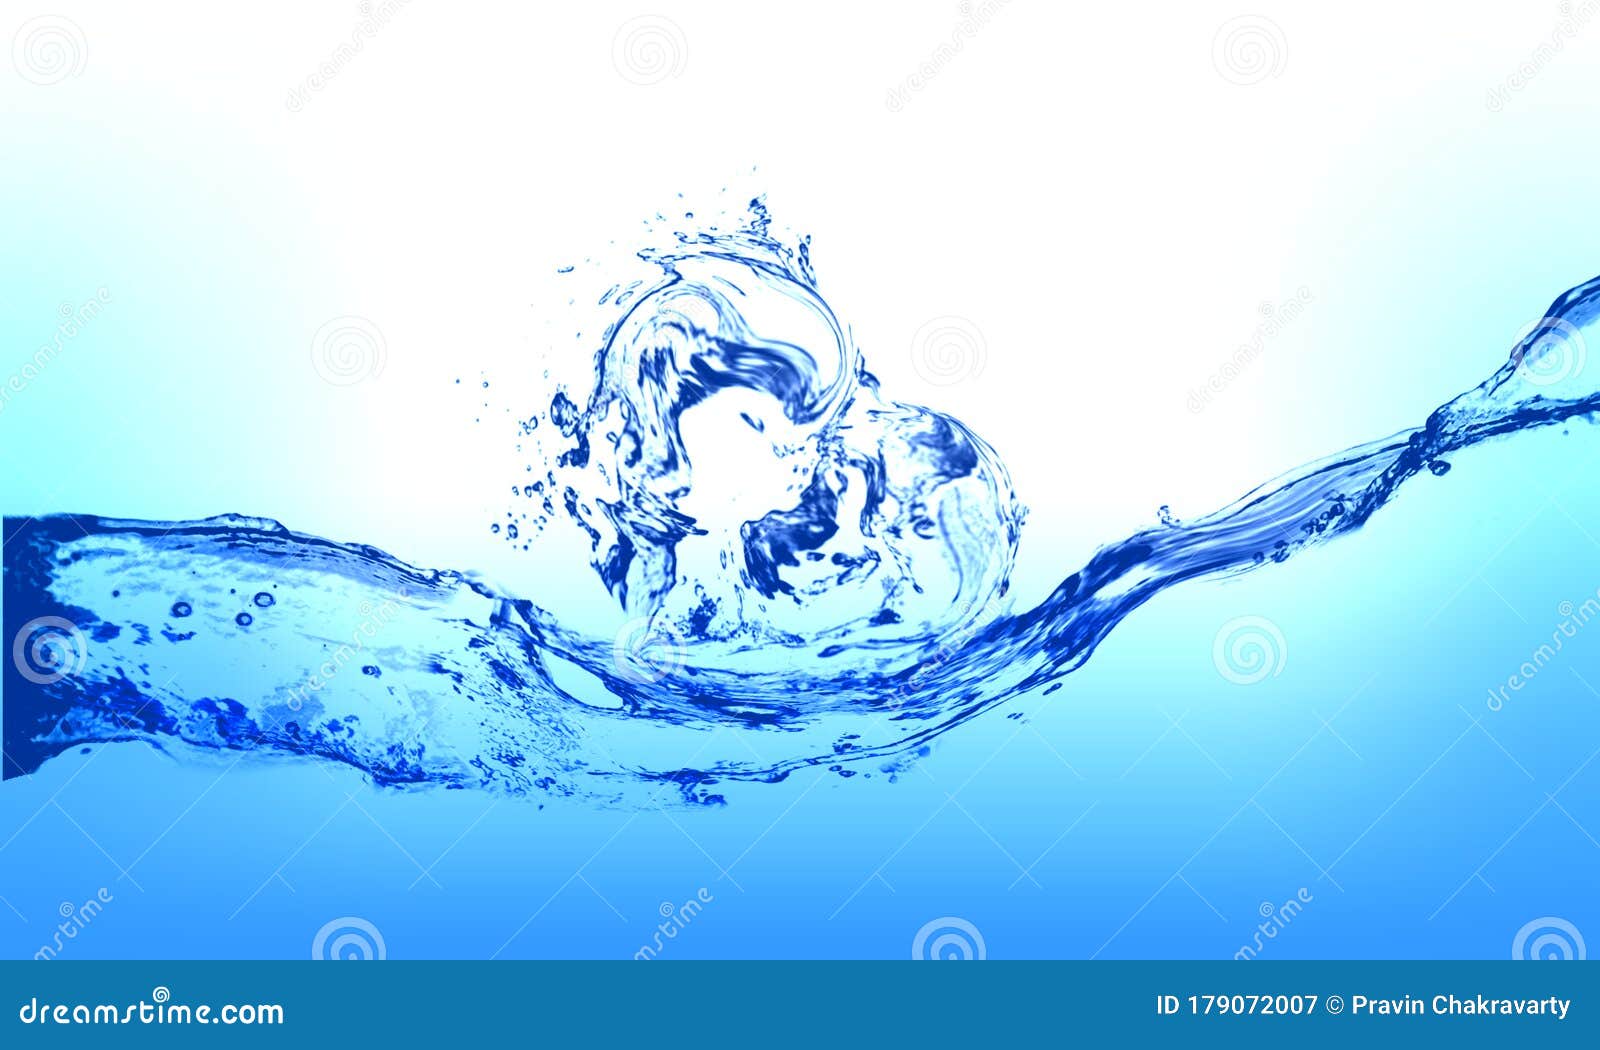 Những giọt nước đập vào mặt nước tạo ra sự chuyển động và sinh động cho bức tranh chụp. Hãy xem thêm hình ảnh về giọt nước để được truyền cảm hứng qua hình ảnh này.